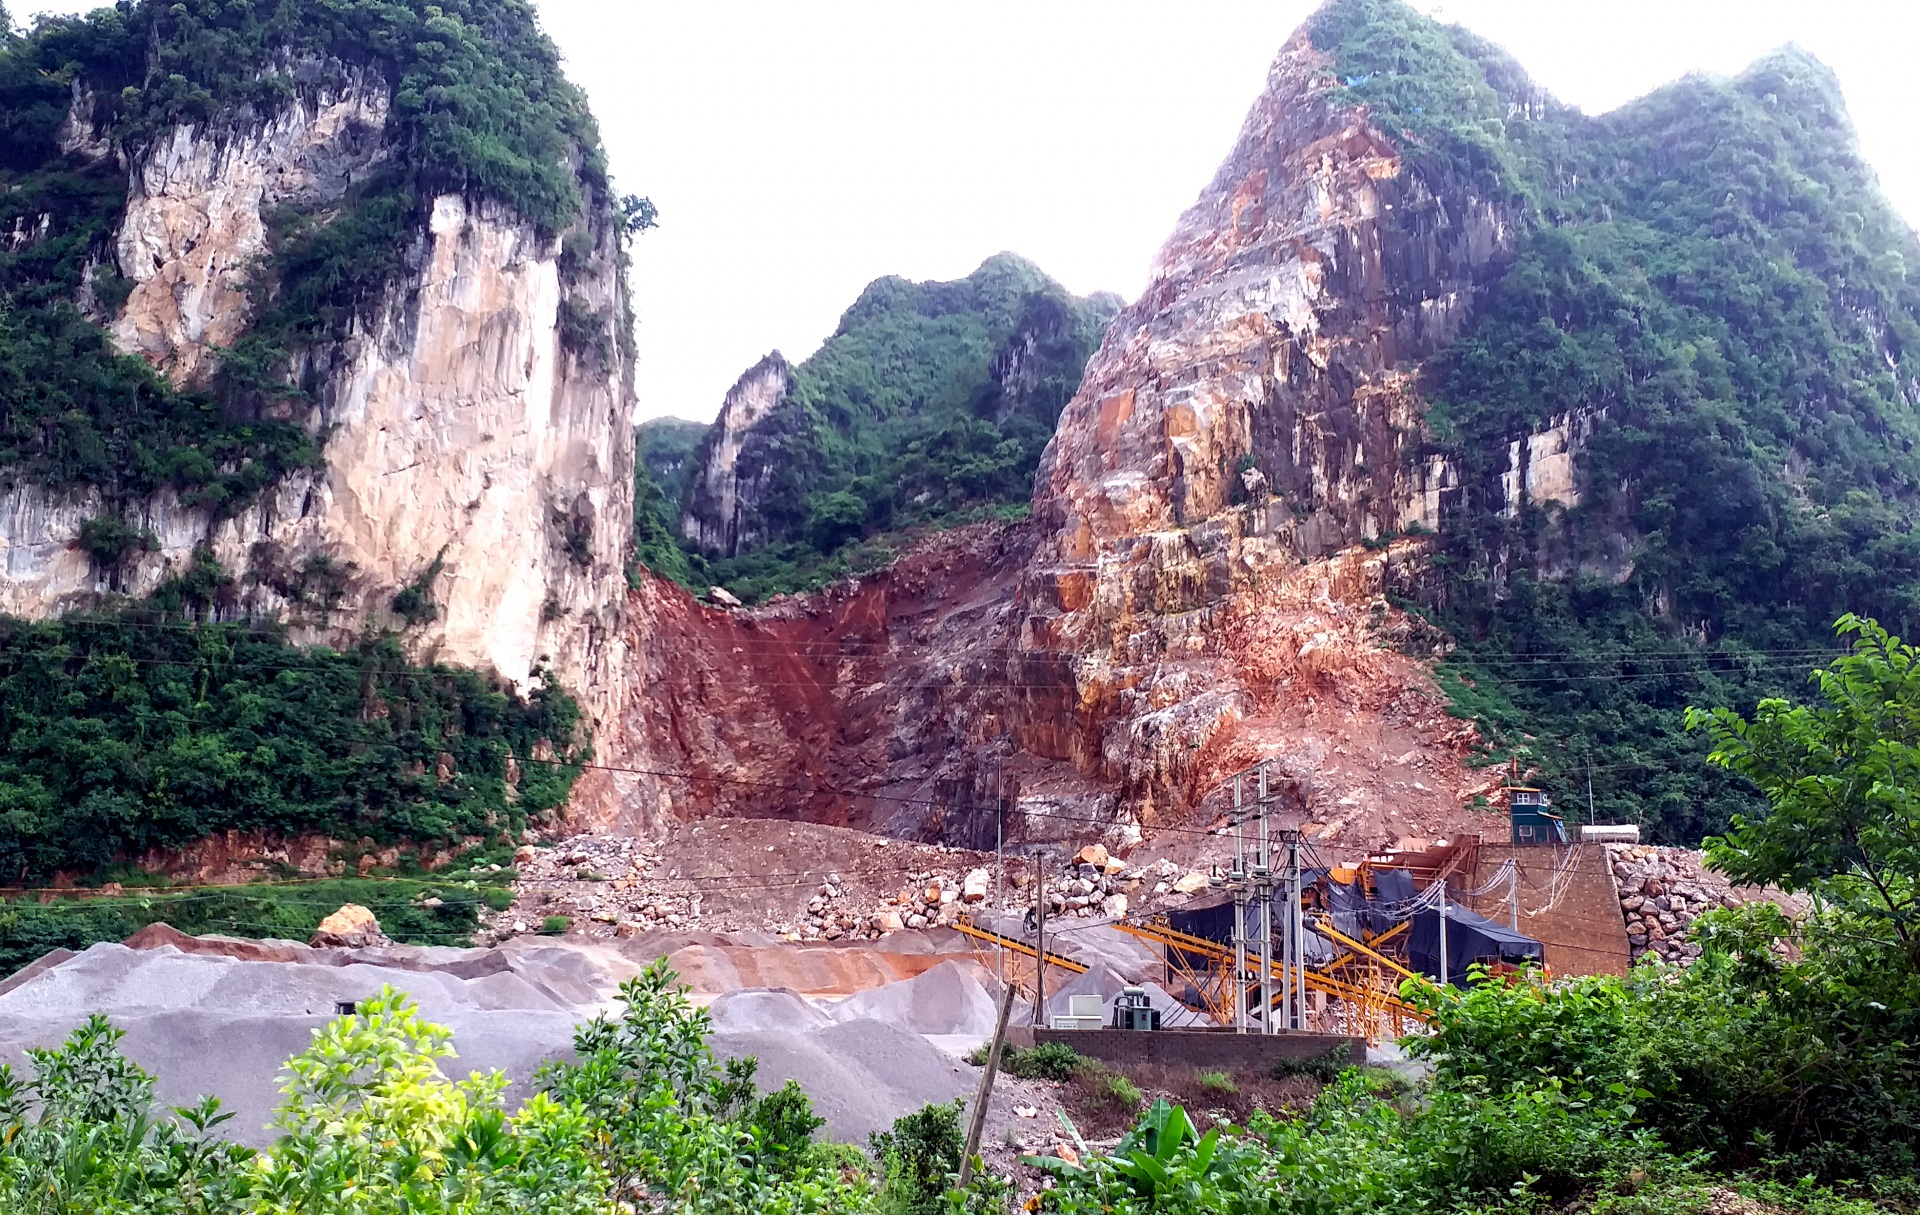 Hữu Lũng - Lạng Sơn: Khai thác, kinh doanh mỏ đá nhưng phải đảm bảo an toàn cho người dân